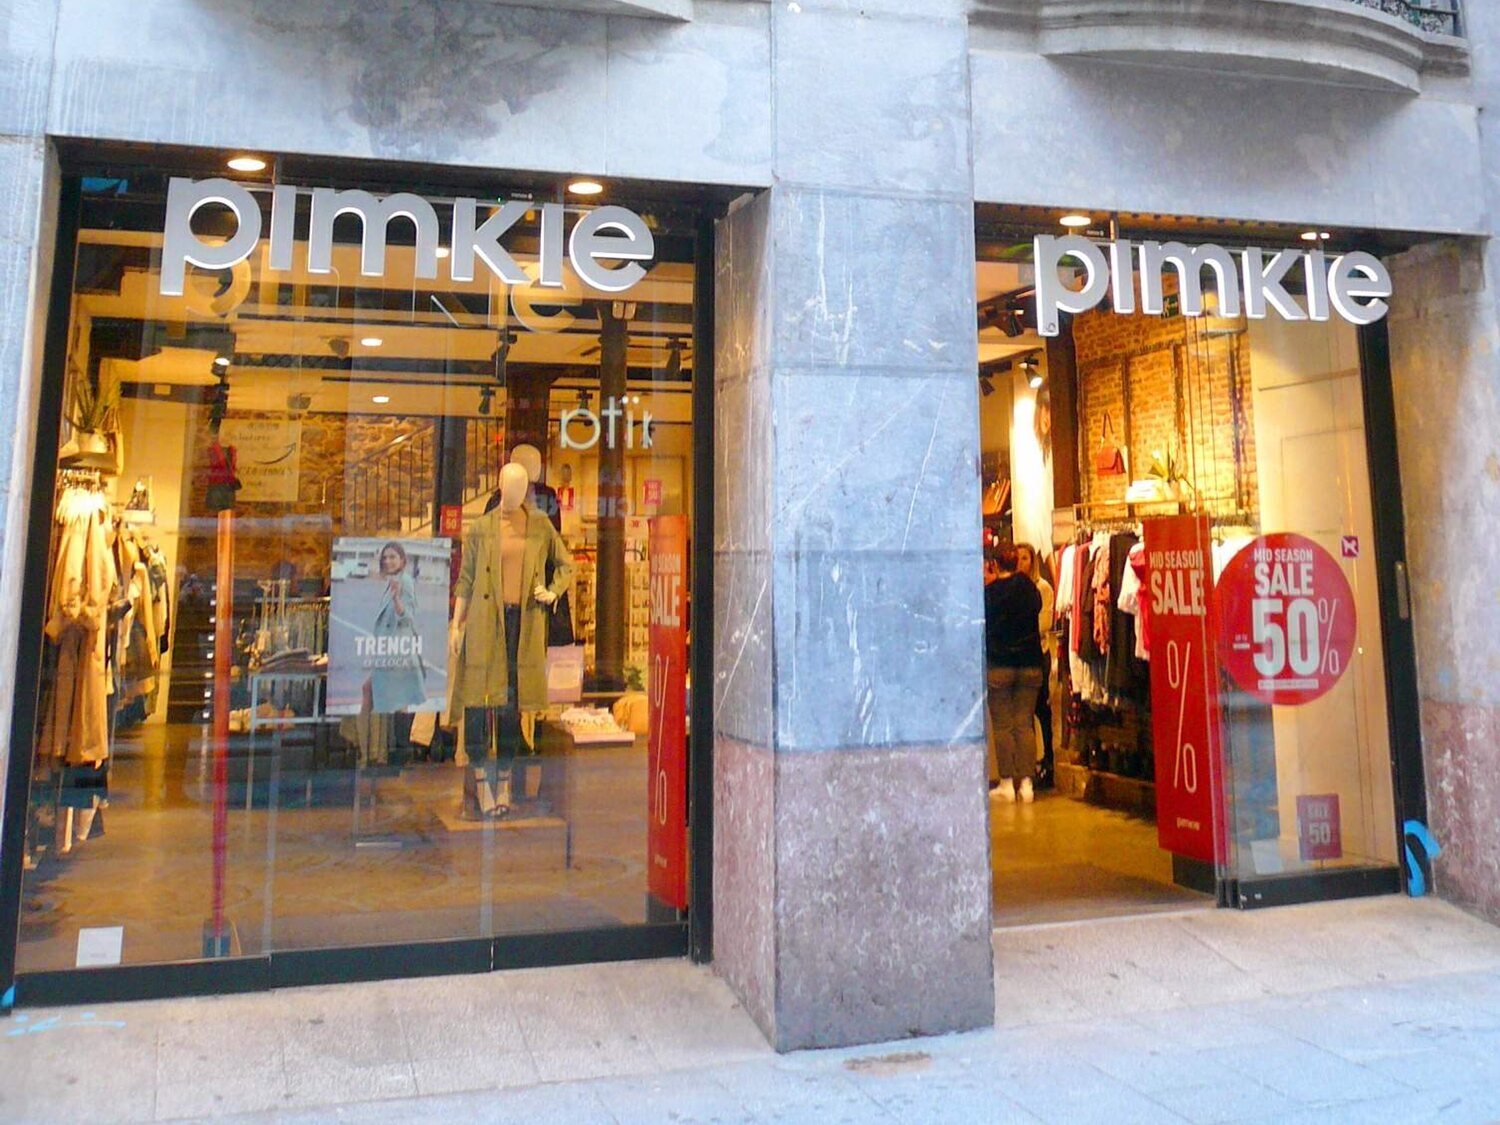 La cadena Pimkie liquida y cierra todas sus tiendas en España